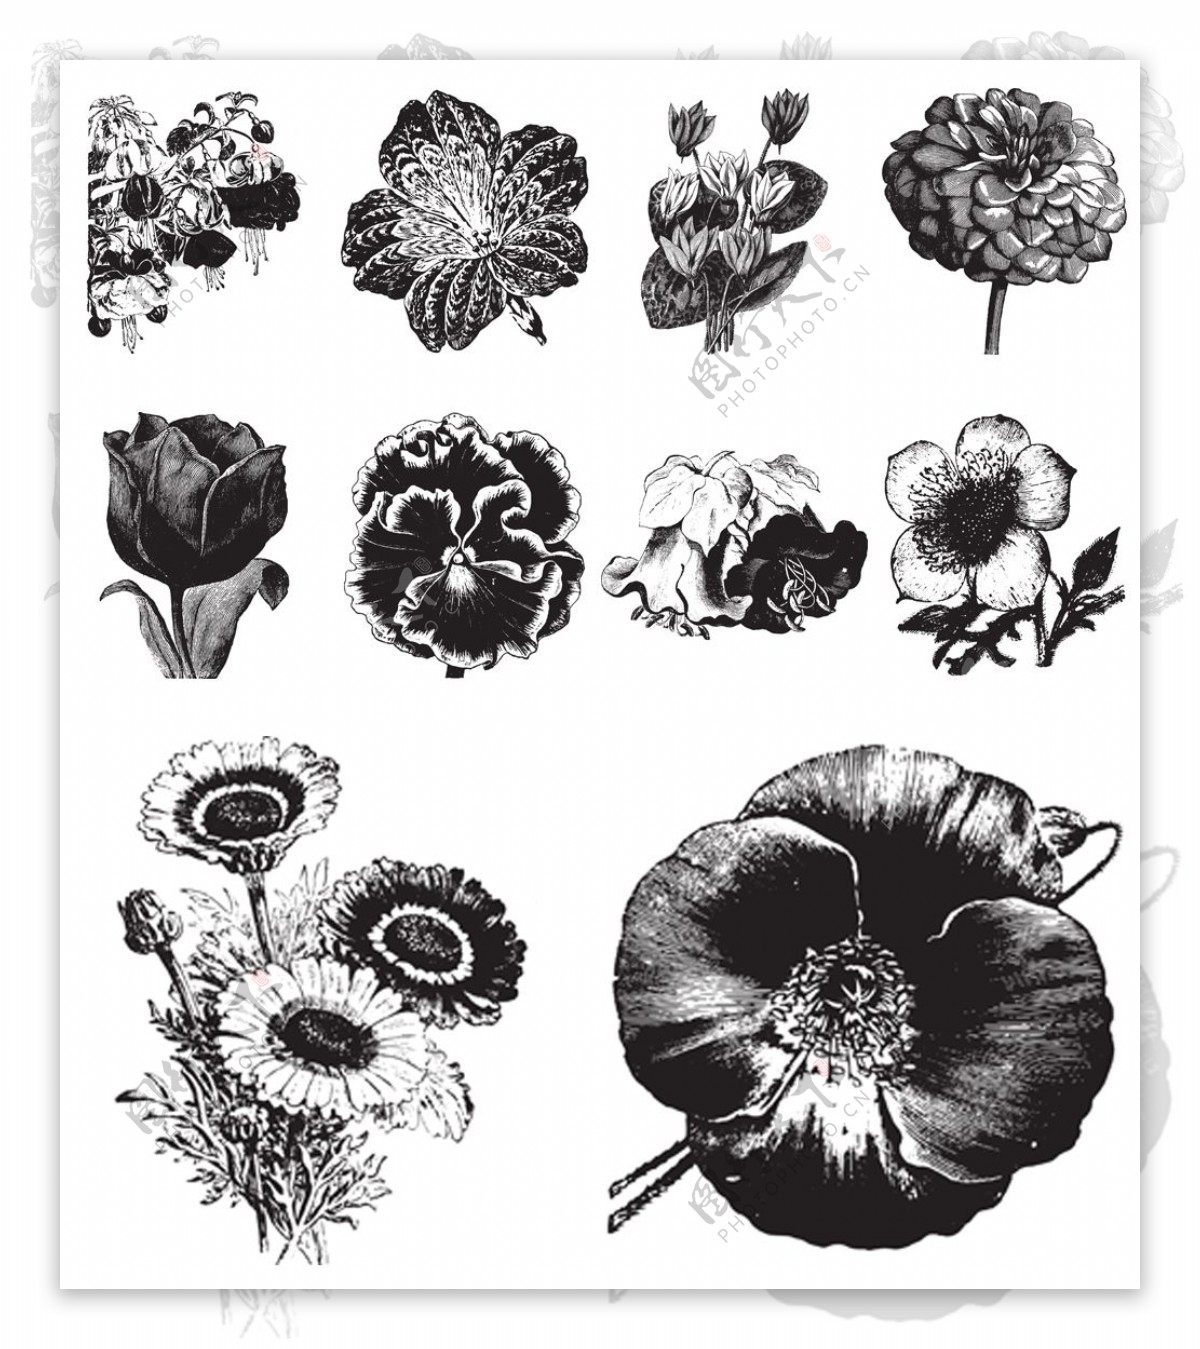 黑白手绘花朵植物插画